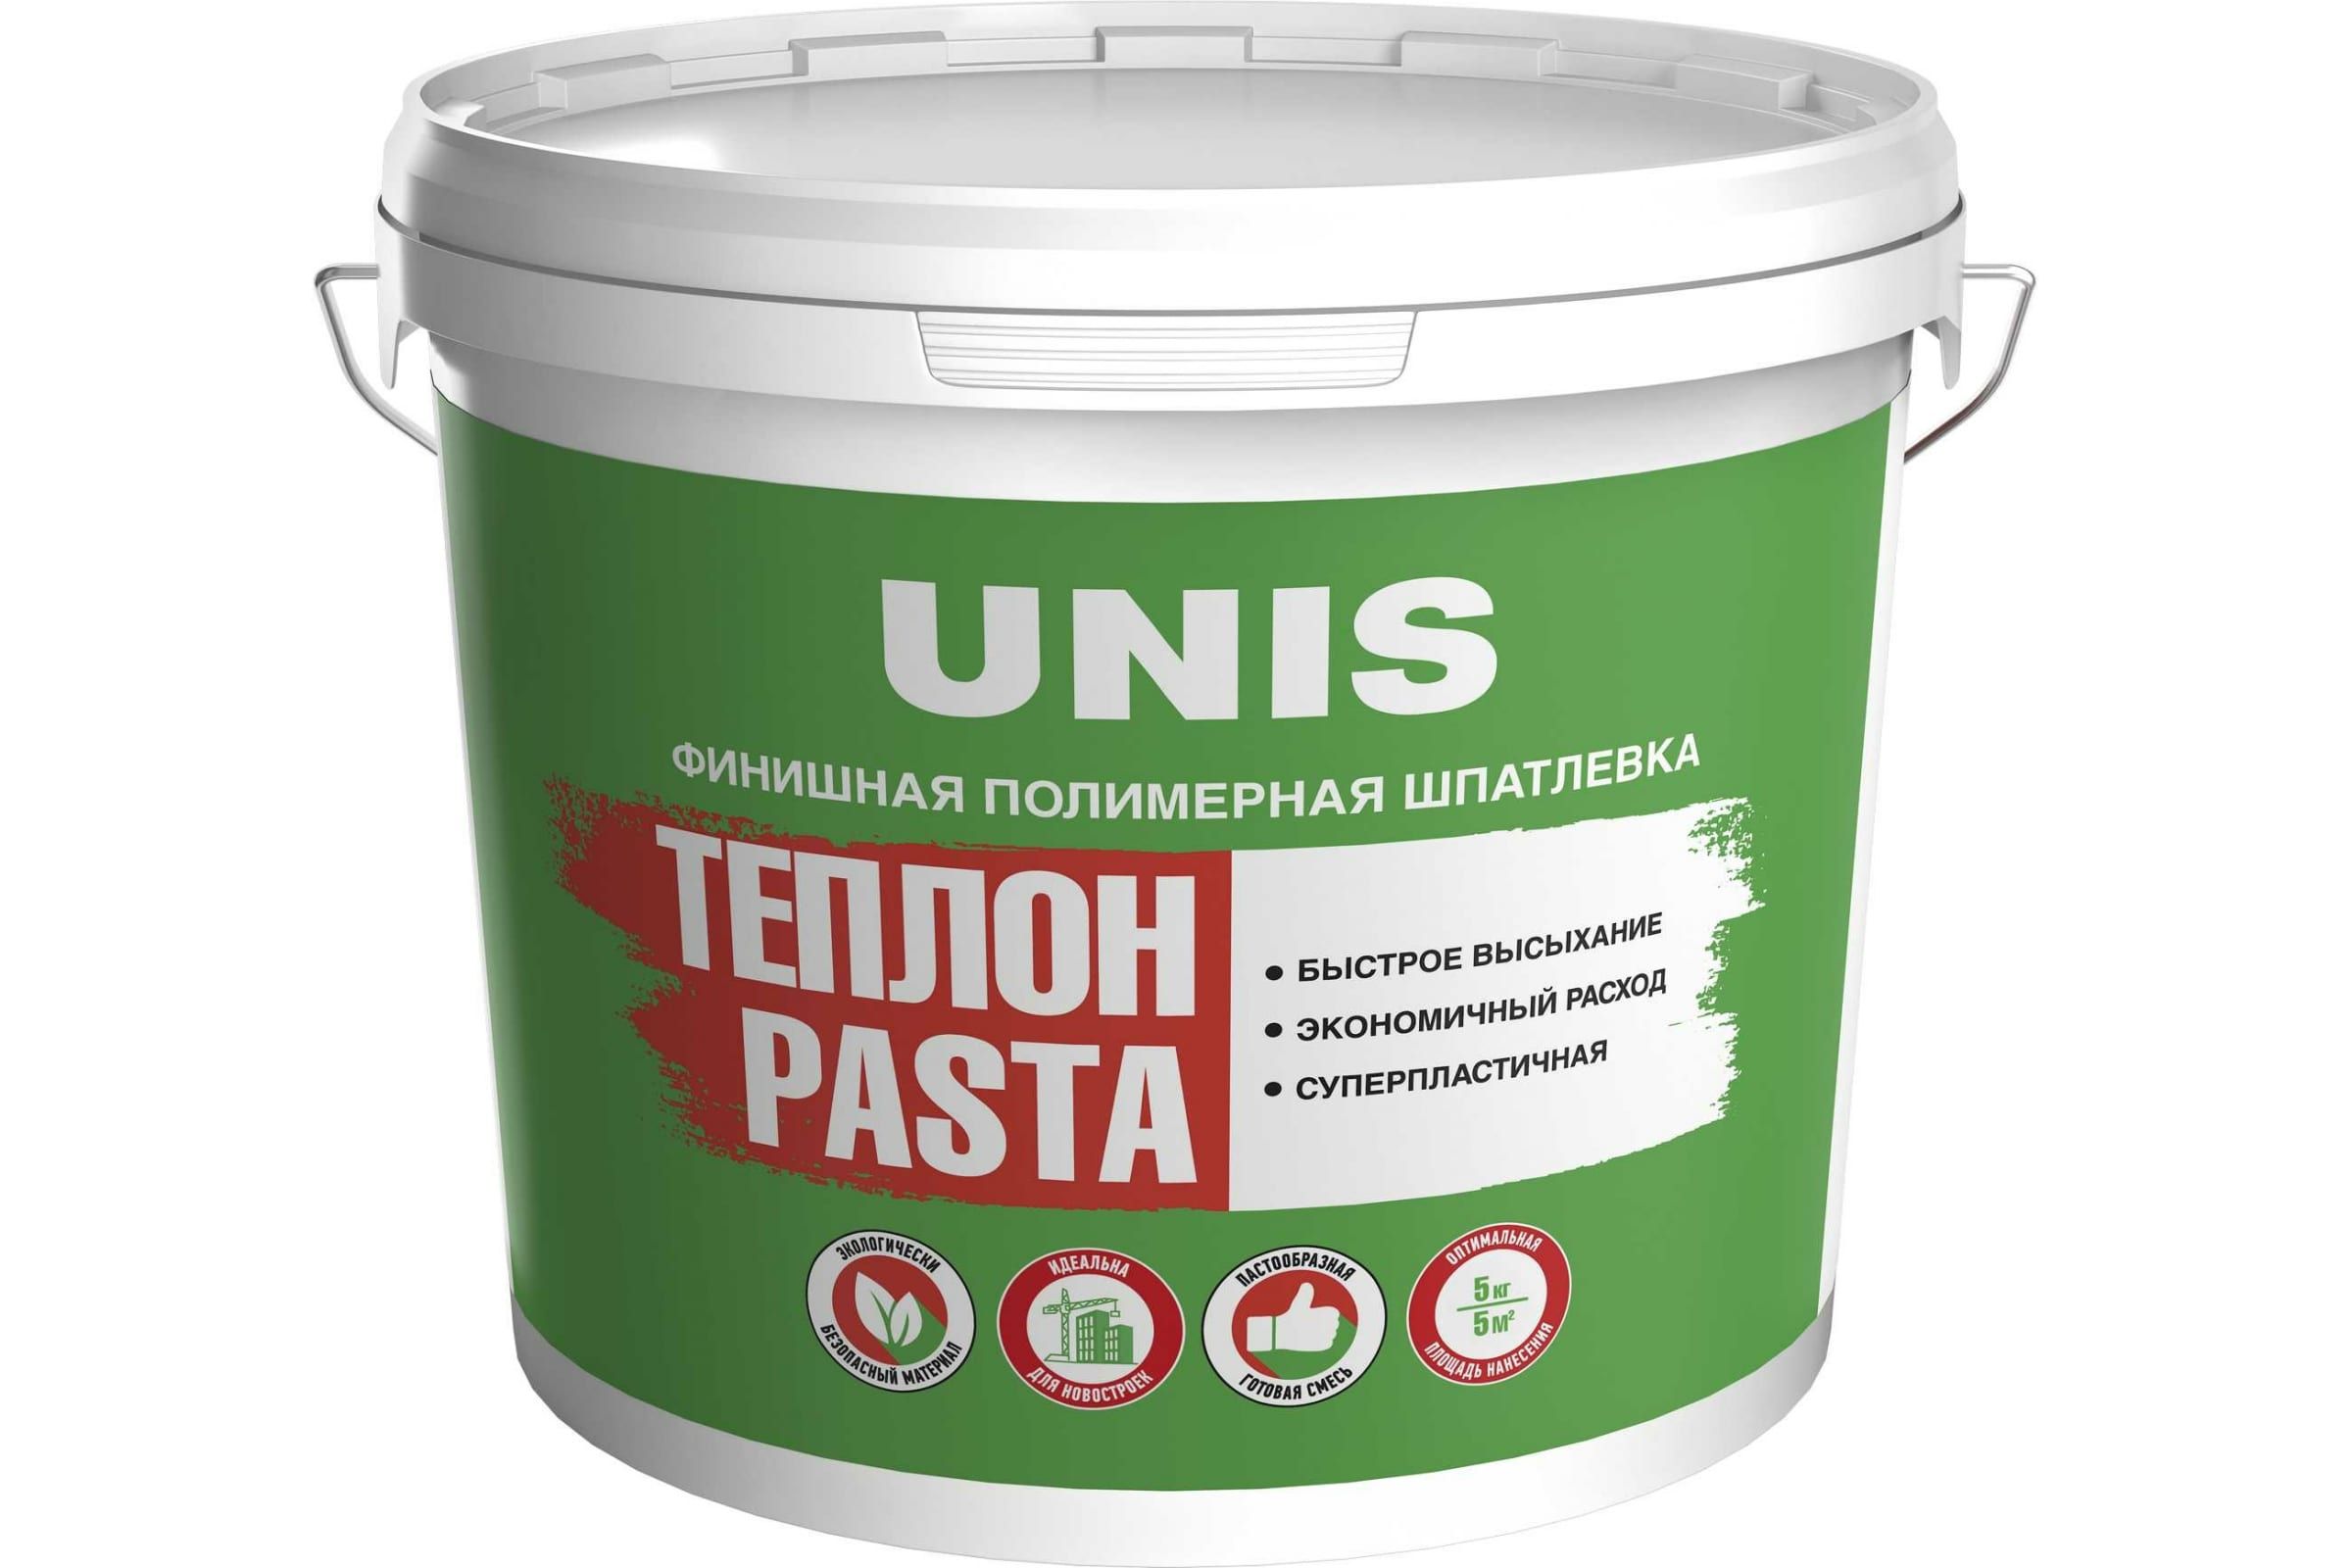 Шпатлевка UNIS Теплон Pasta полимерная, финишная, 5 кг 4607005184887